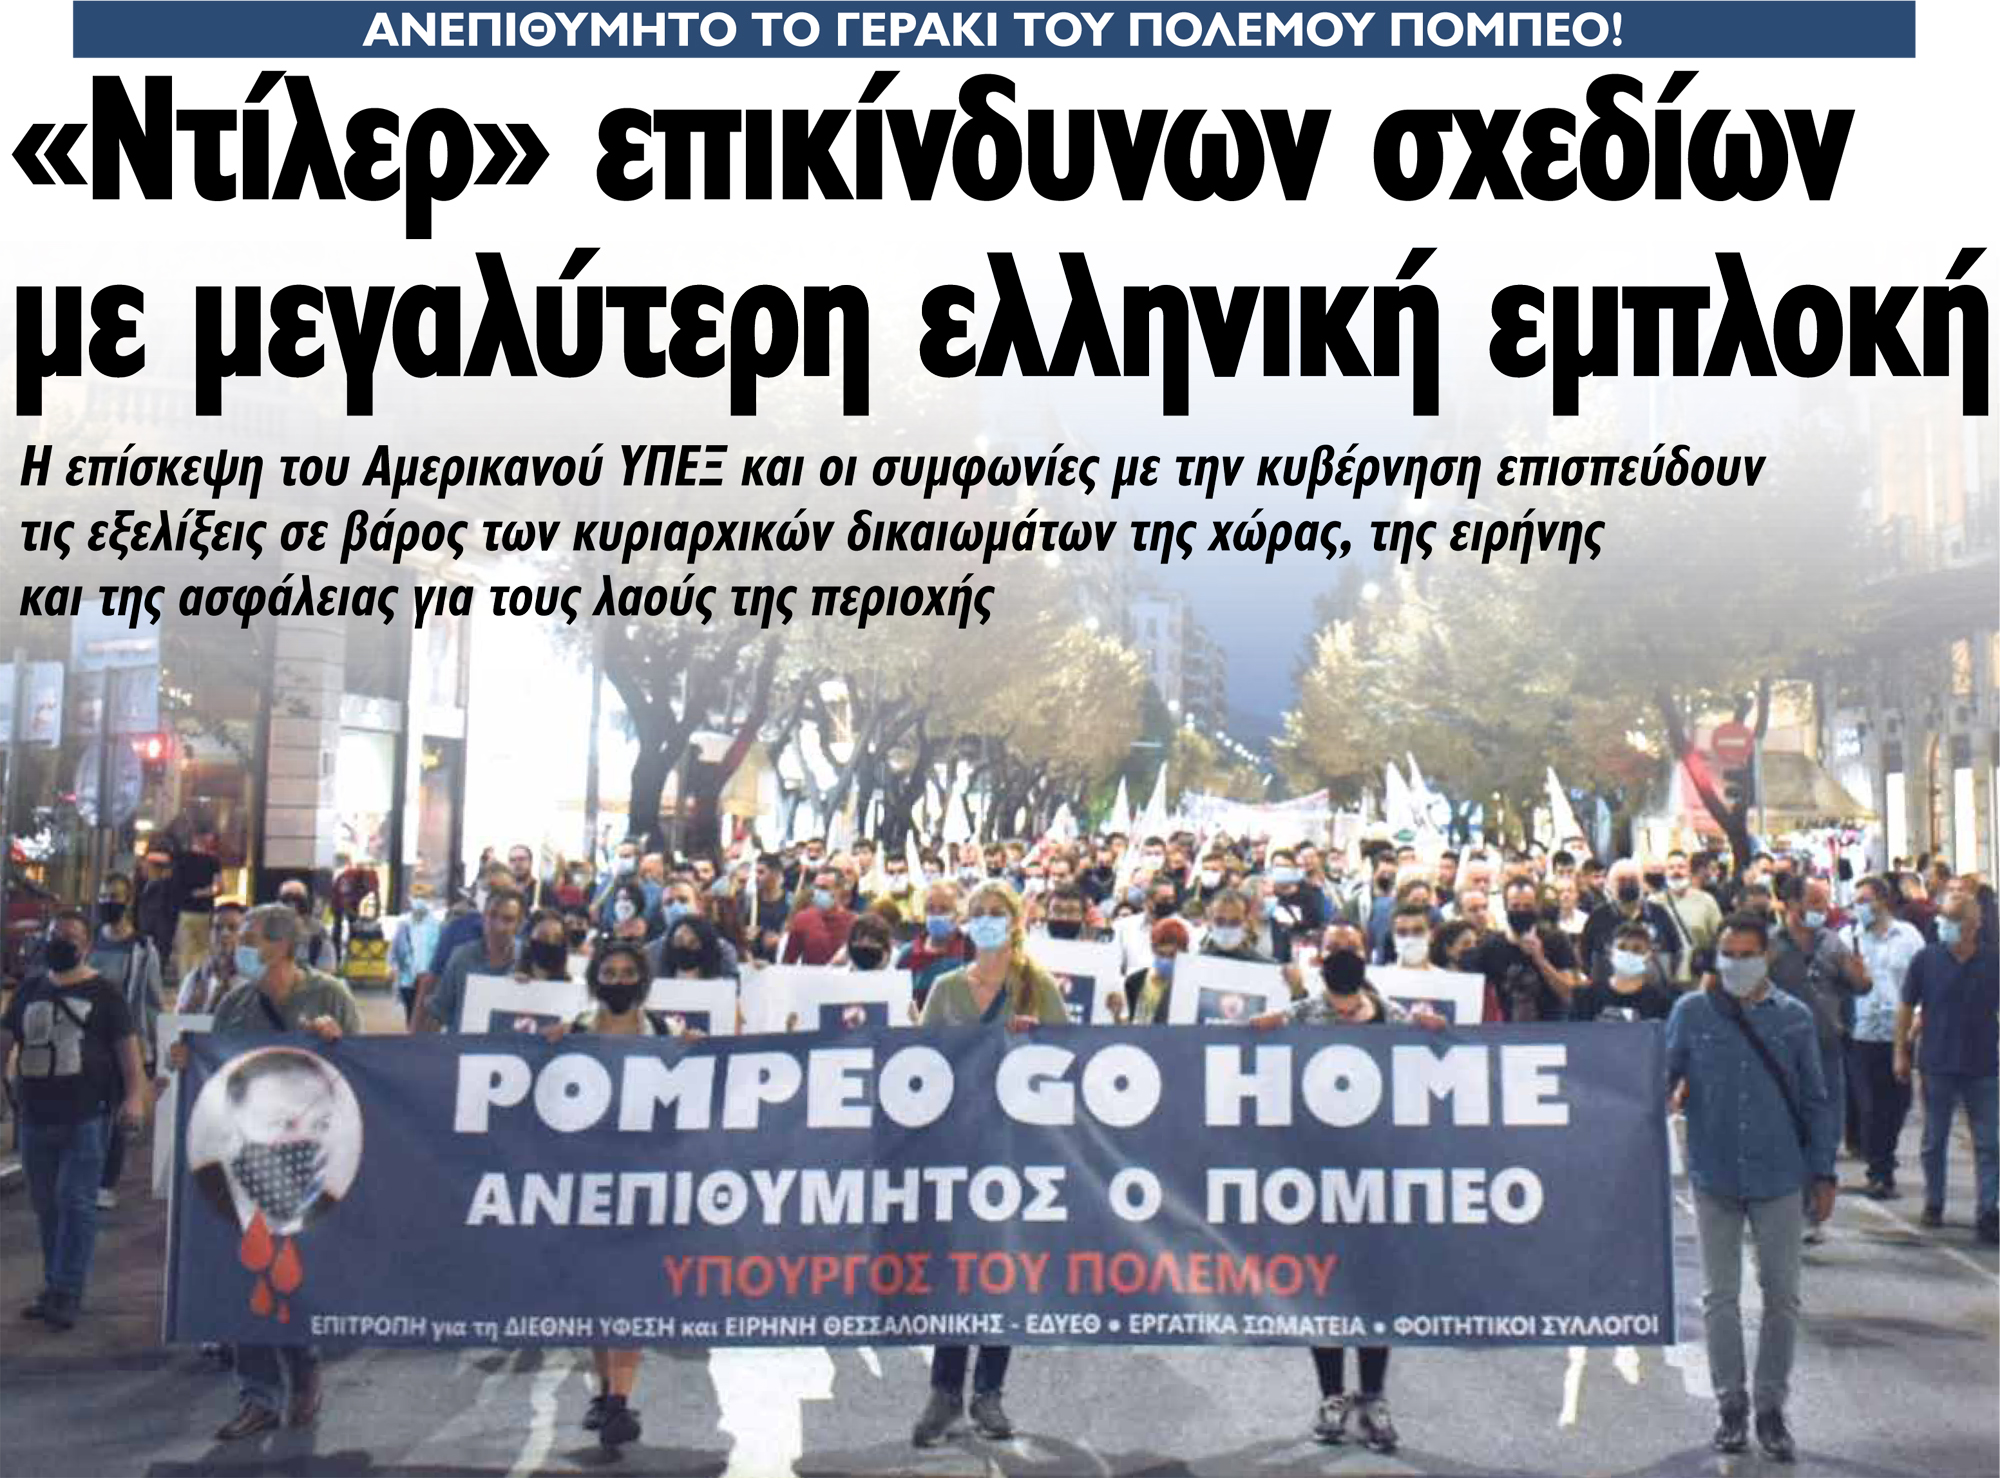 «Ντίλερ» επικίνδυνων σχεδίων με μεγαλύτερη ελληνική εμπλοκή